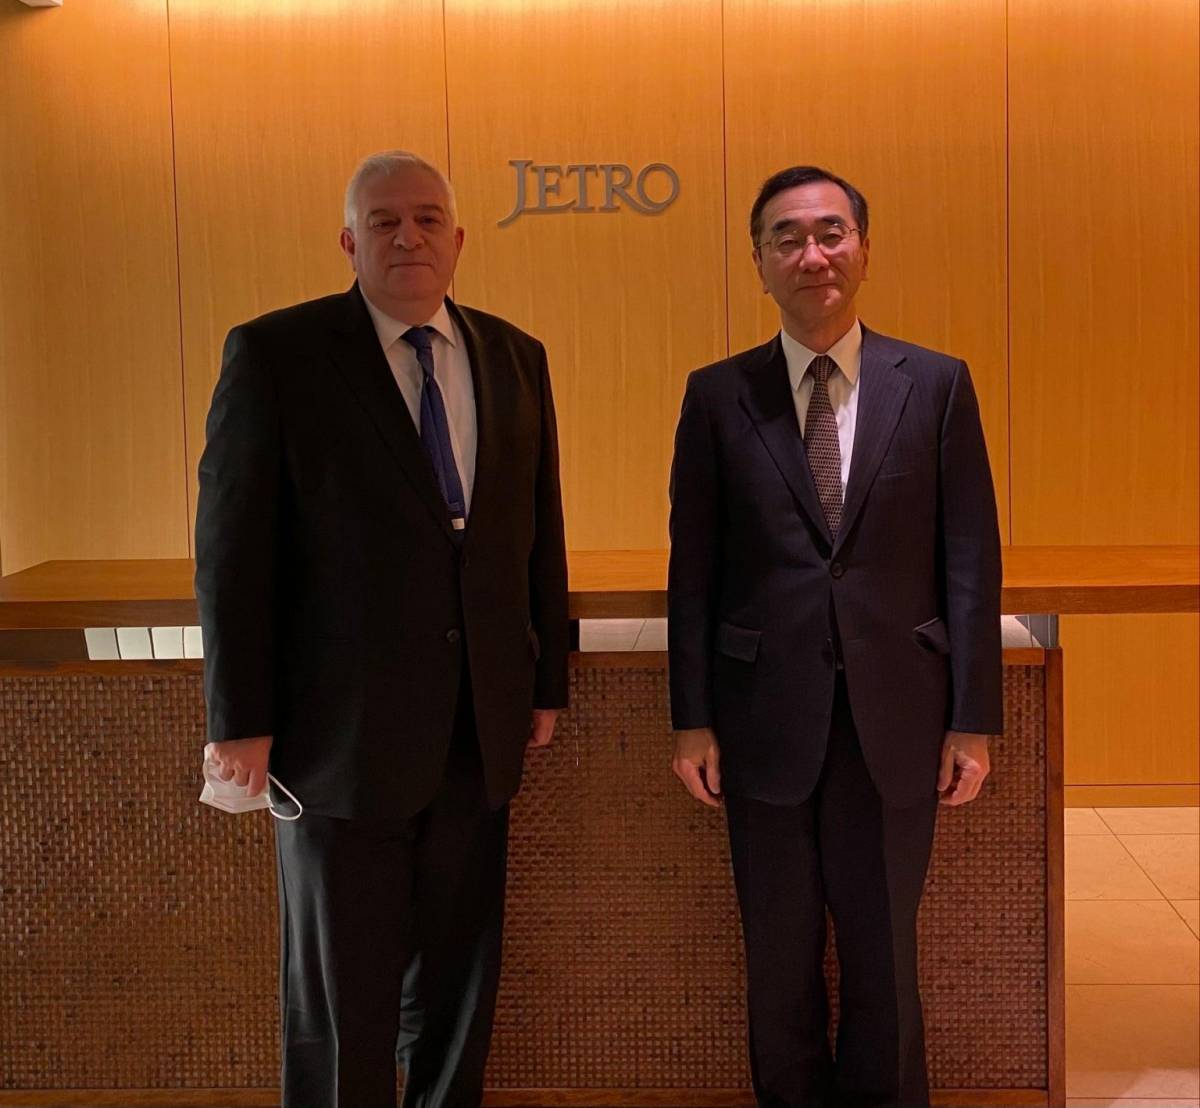 Դեսպան Ա. Հովհաննիսյանն ու JETRO-ի ղեկավարը քննարկել են հայկական արտադրանքը Ճապոնիա արտահանելու հնարավորությունները